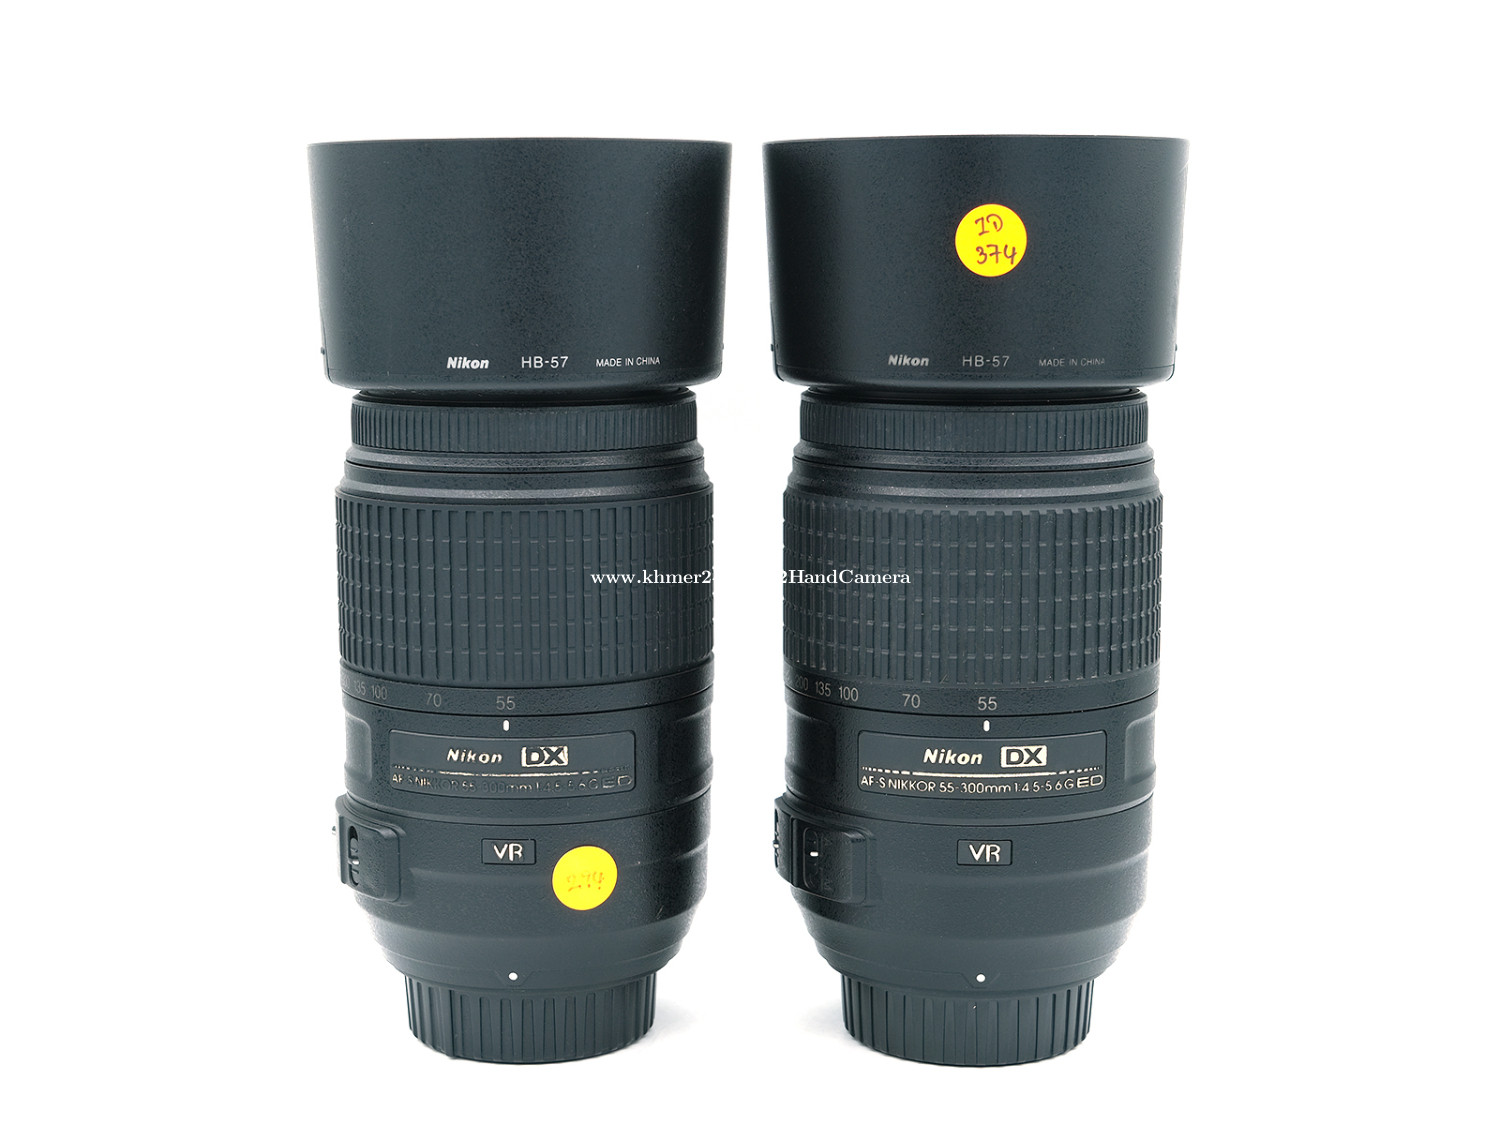 Nikon AF-S DX 55-300mm F4.5-5.6G ED VR - レンズ(ズーム)